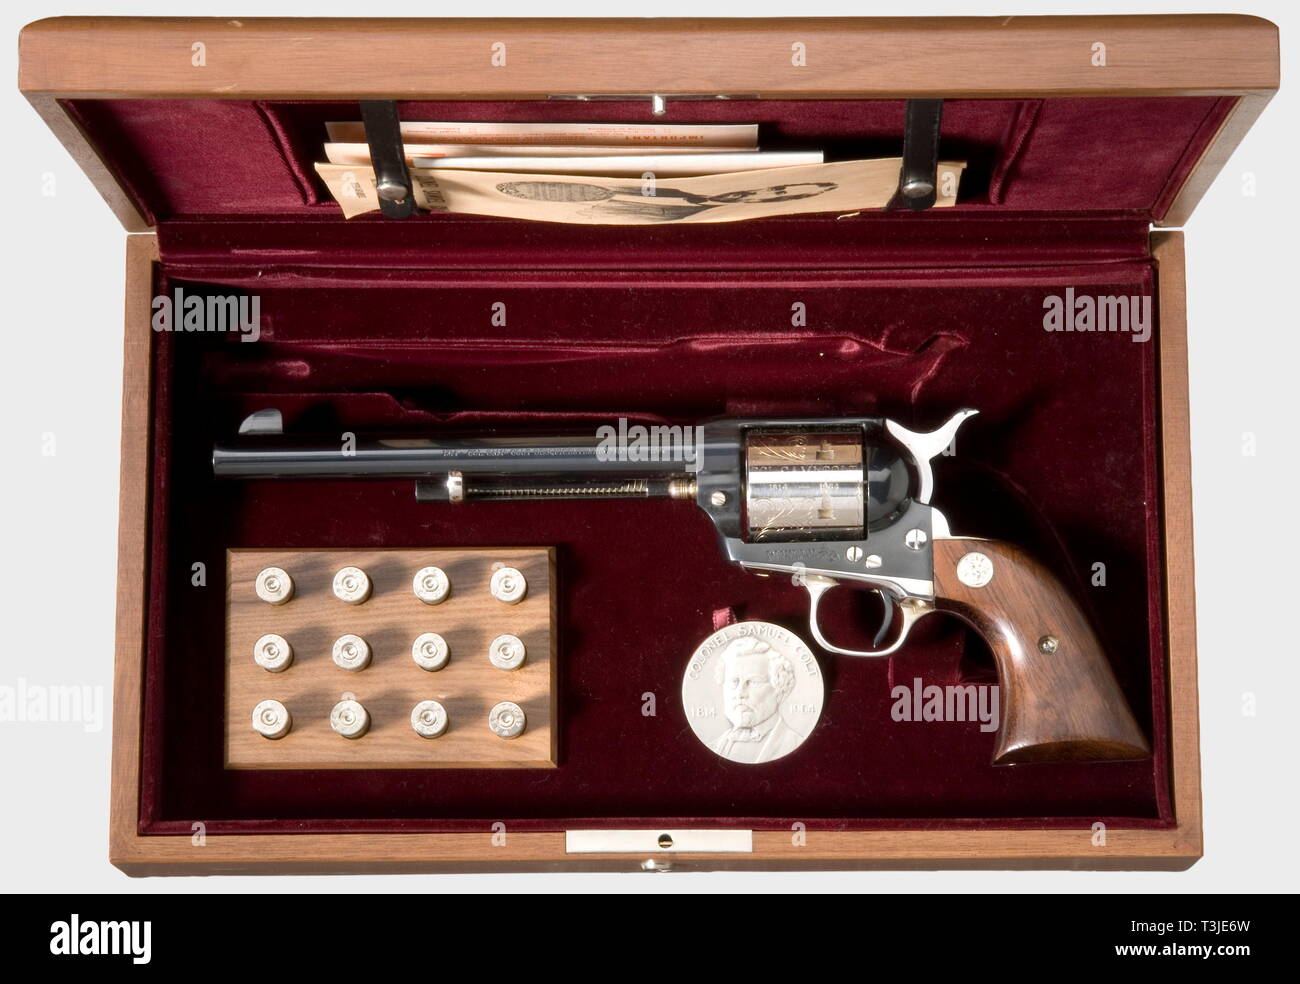 Armi di piccolo calibro, revolver Colt singola azione Sesquicentennial esercito, calibro .45, 2005, Additional-Rights-Clearance-Info-Not-Available Foto Stock